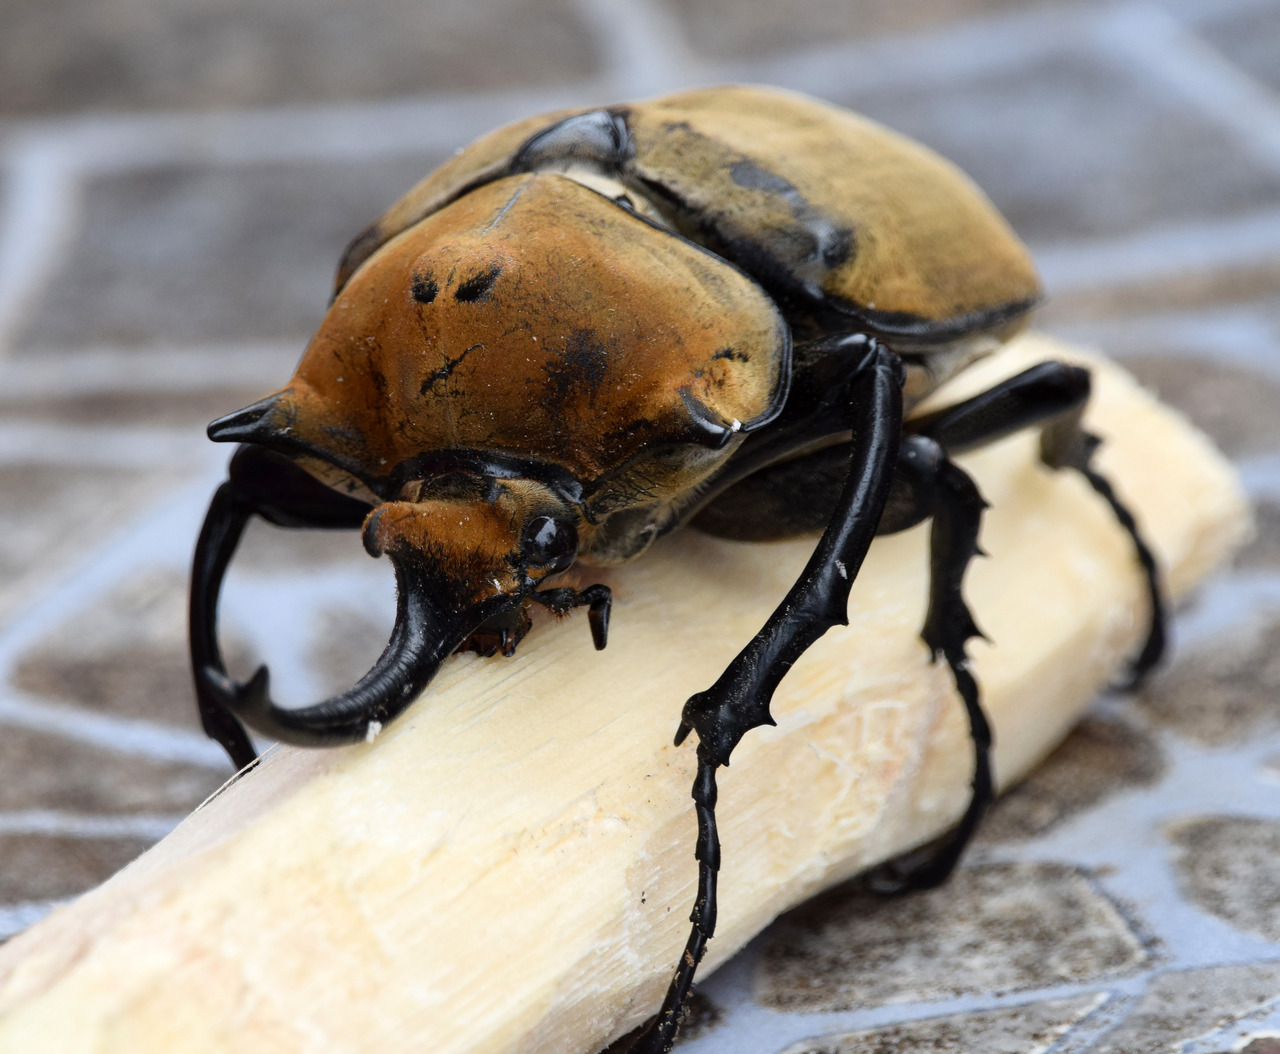 Hercules Beetle
Dynastes hercules
Source:  Here